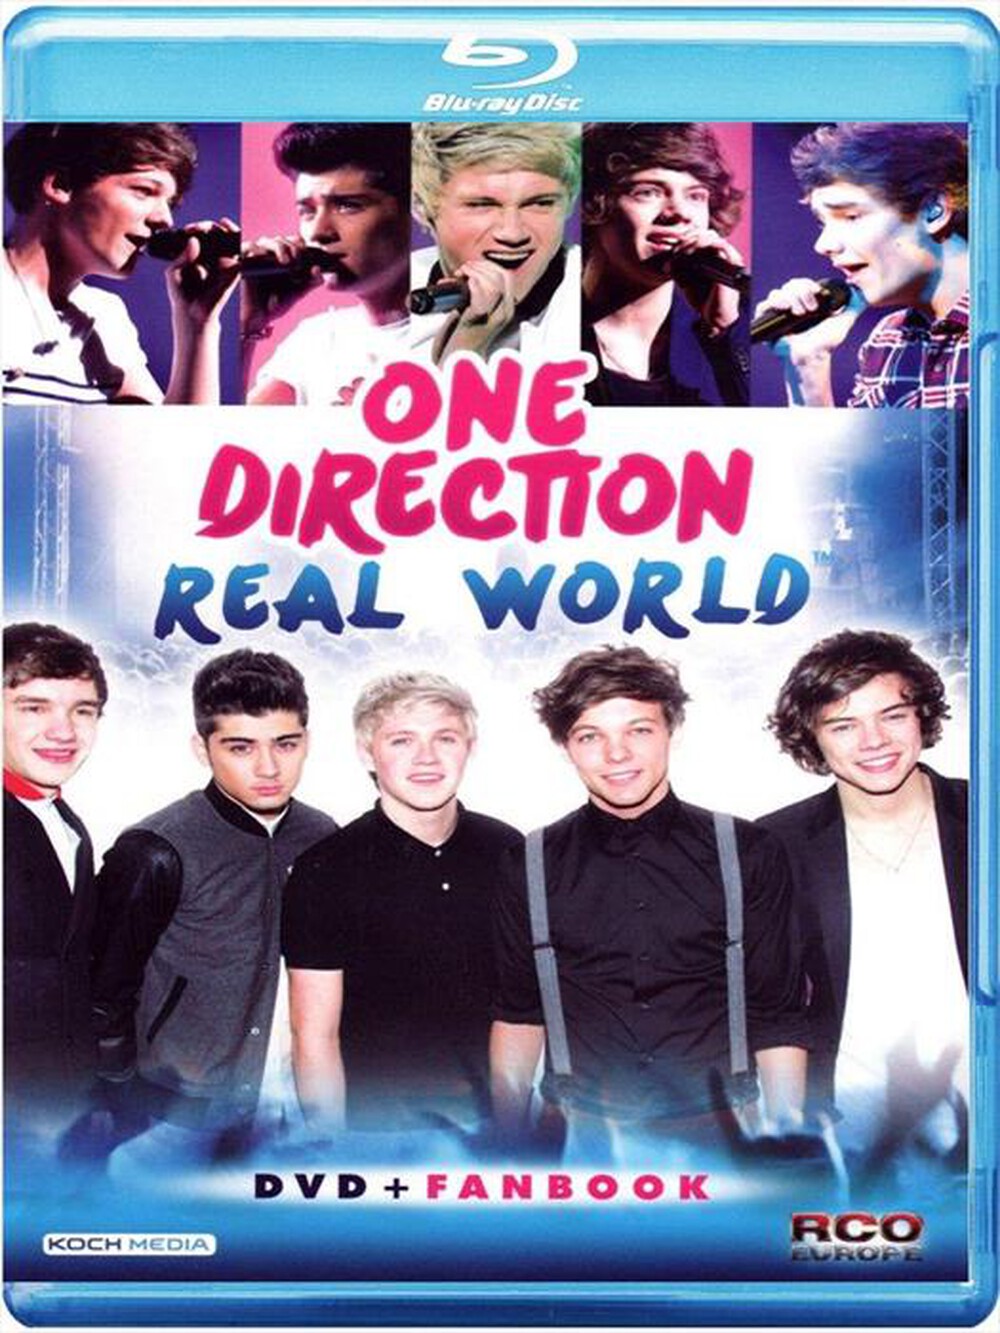 "CECCHI GORI - One Direction - Real World"